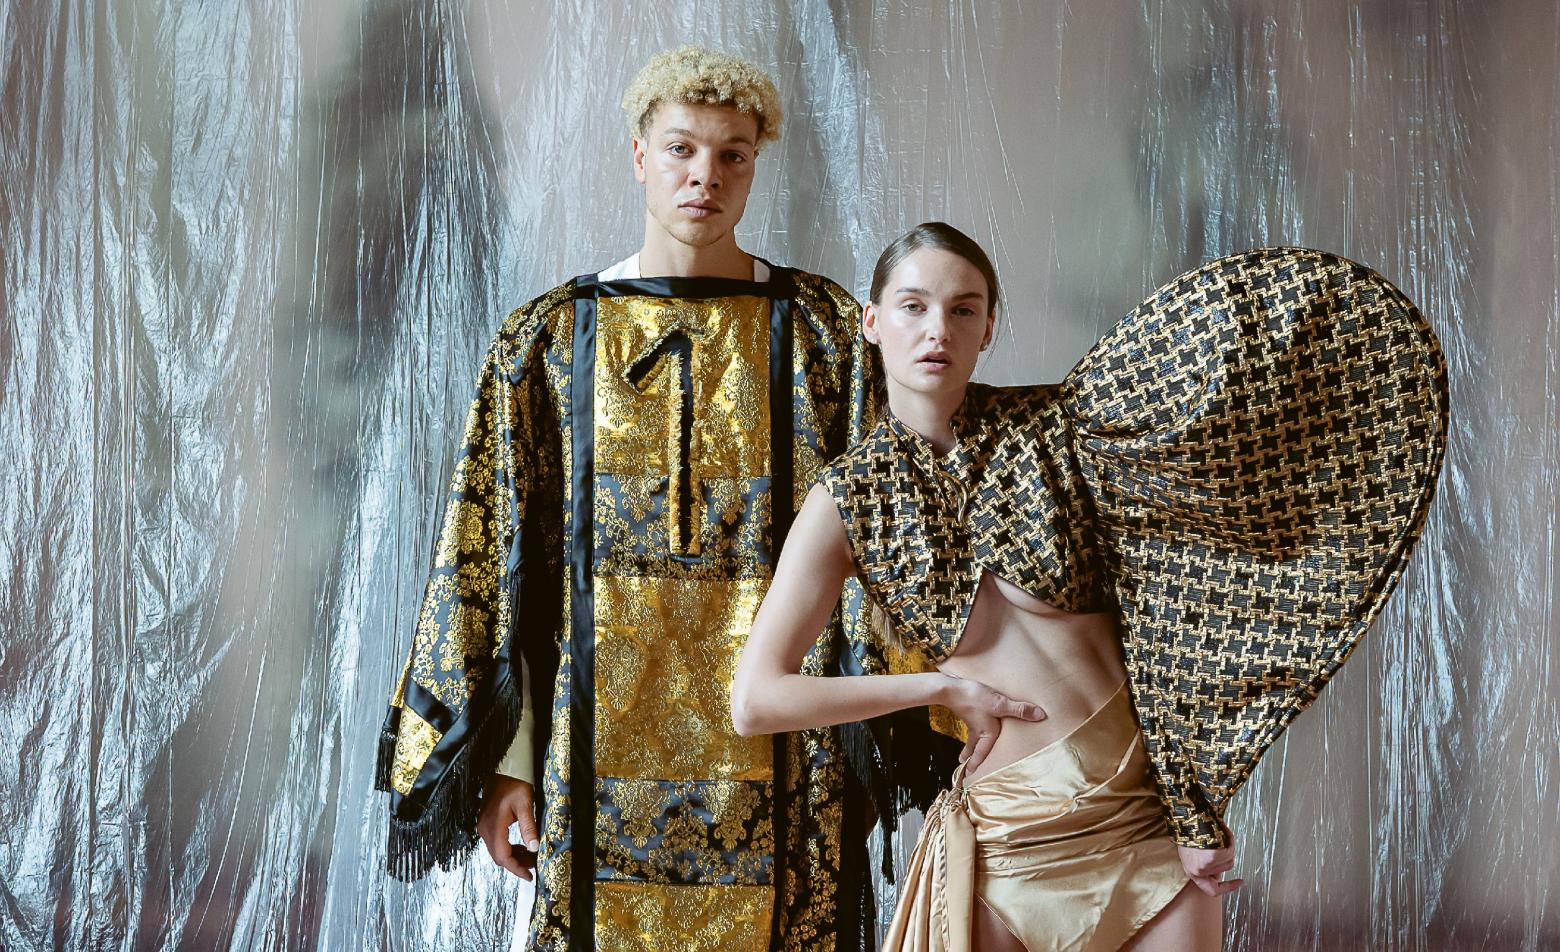 Zwei Models präsentieren Kleidung mit den Designs von Yvonne von Brandis (l) und Giuliana Schmidt (r) für die ungewöhnliche Schau "Der goldene Faden", die unter anderem sexuellen Missbrauch und Schuld thematisiert